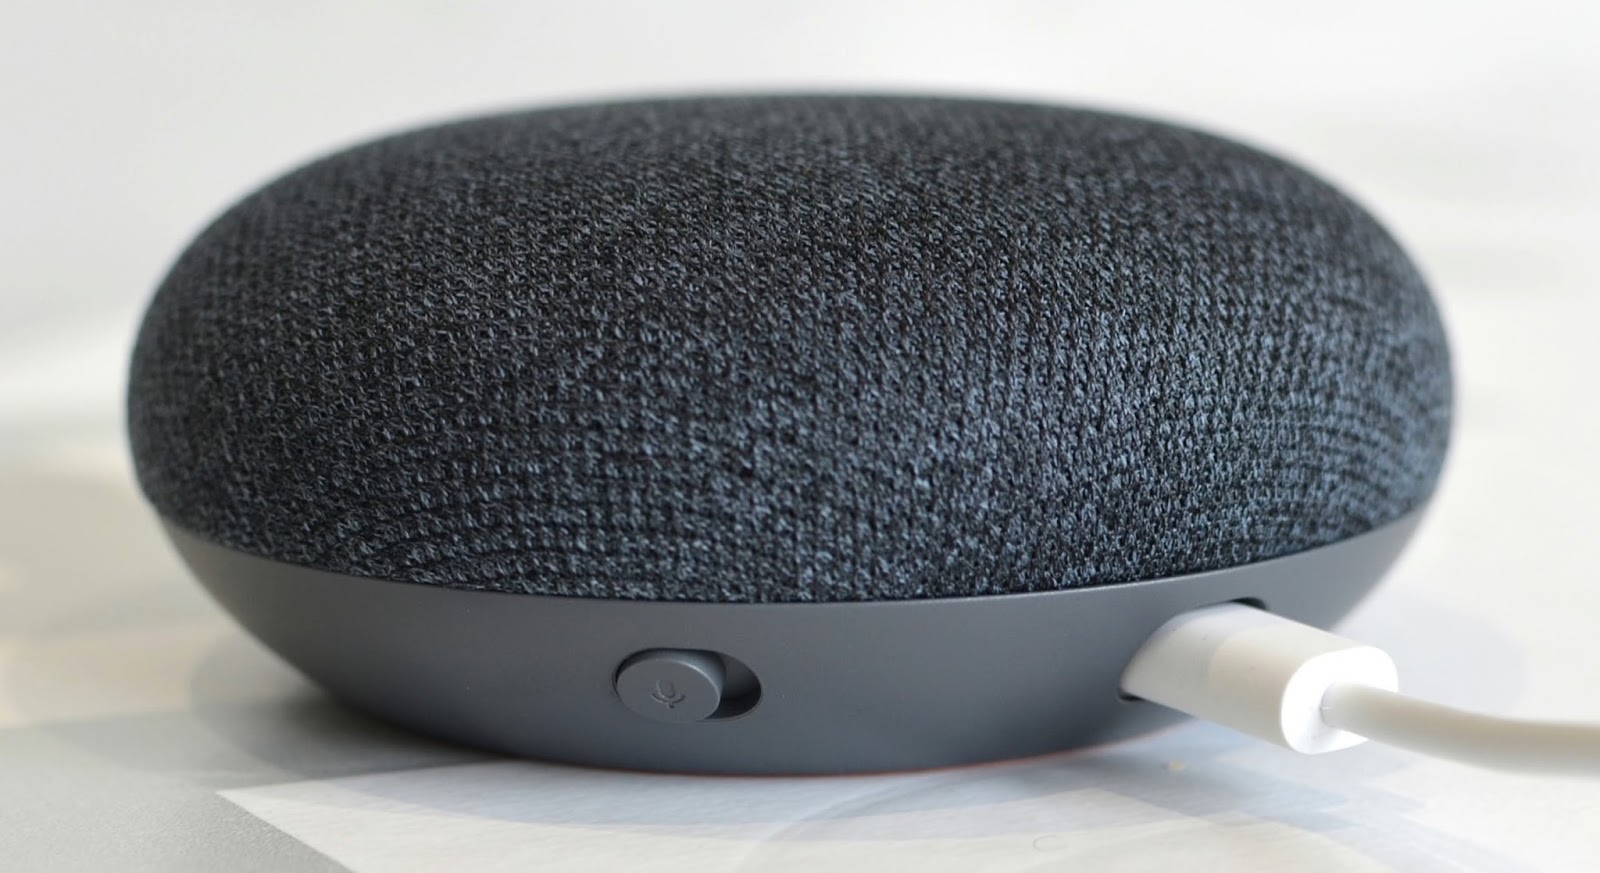 Il Disinformatico: Google Home Mini: mettersi un microfono aperto in casa  non è mai una buona idea